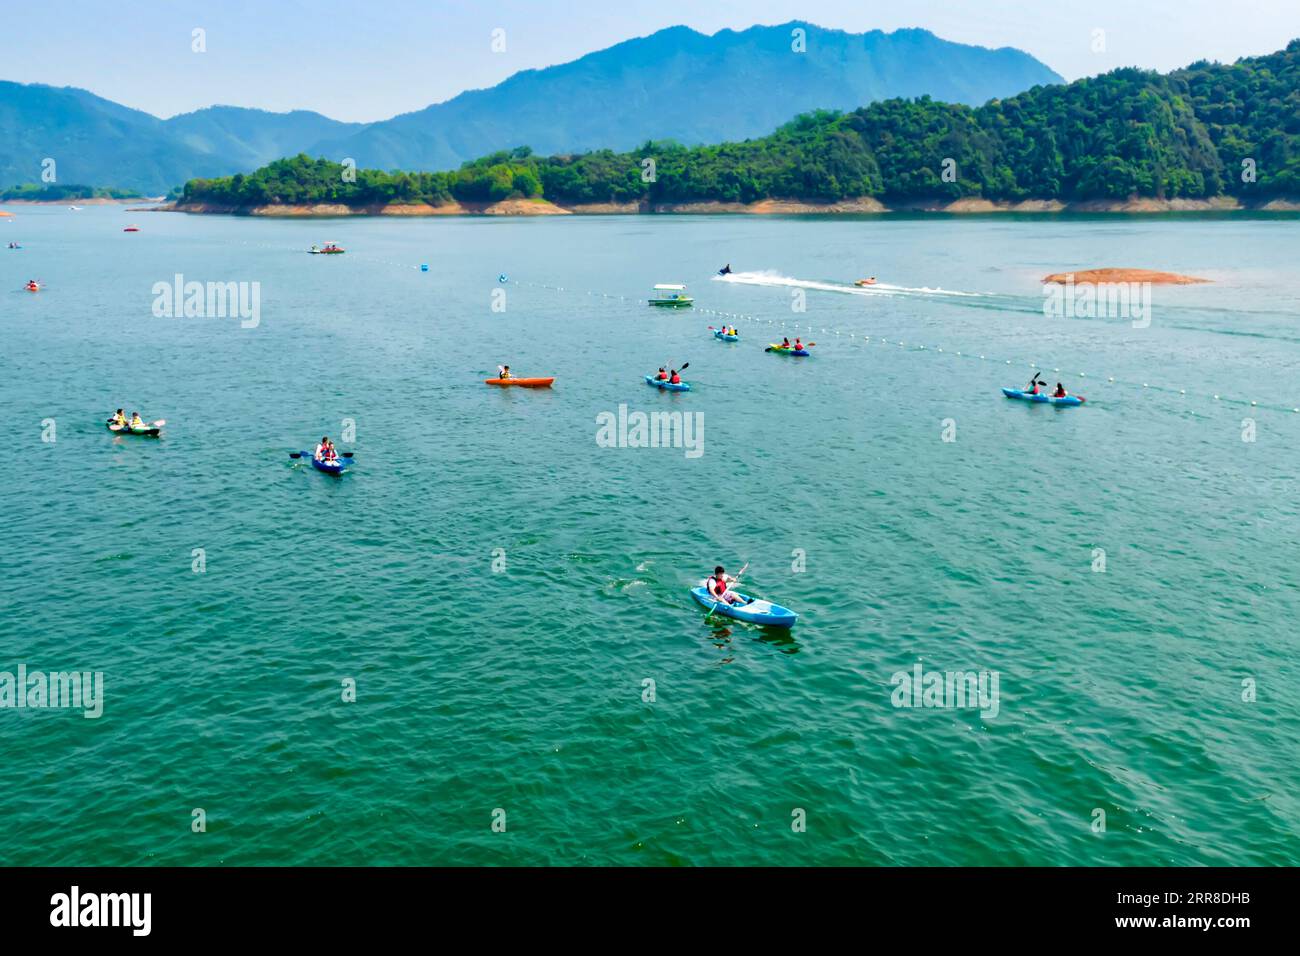 210503 -- HANGZHOU, le 3 mai 2021 -- une photo aérienne prise le 2 mai 2021 montre des touristes jouant dans un parc d'attractions dans le canton de Qiandaohu, comté de Chun an dans la province du Zhejiang de l'est de la Chine. Les gens apprécient les activités de plein air pendant les cinq jours de vacances du 1er mai à travers la Chine. Photo de /Xinhua CHINA-MAY DAY HOLIDAY-TOURISM CN MaoxYongfeng PUBLICATIONxNOTxINxCHN Banque D'Images